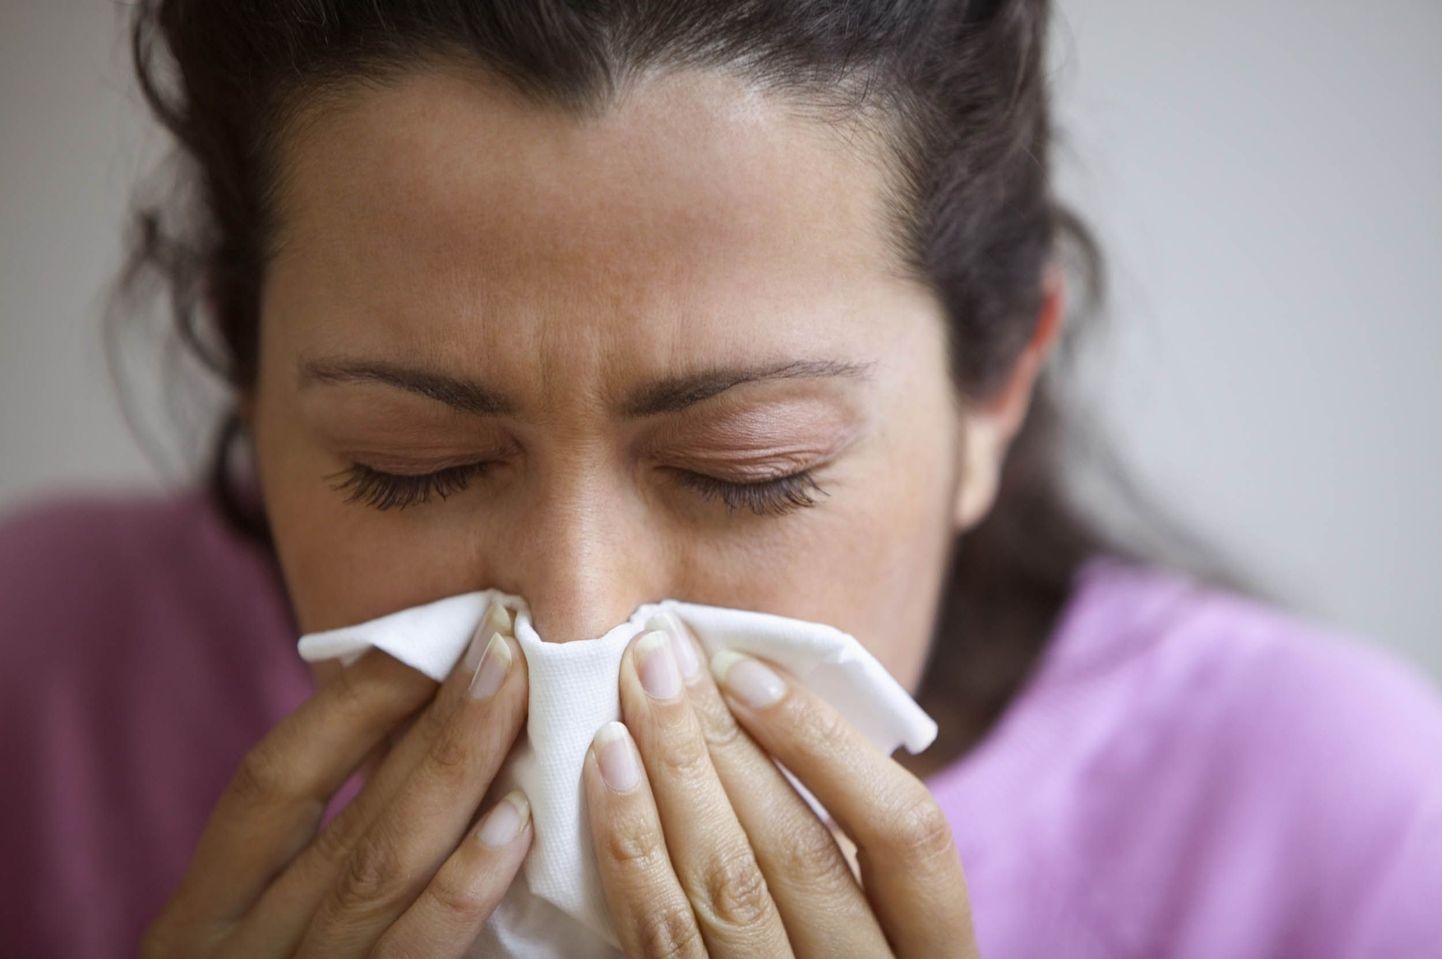 Human metapneumoviiruse põhjustatud haiguse põdemine võib kulgeda sarnaselt teiste hingamisteede haigustega.